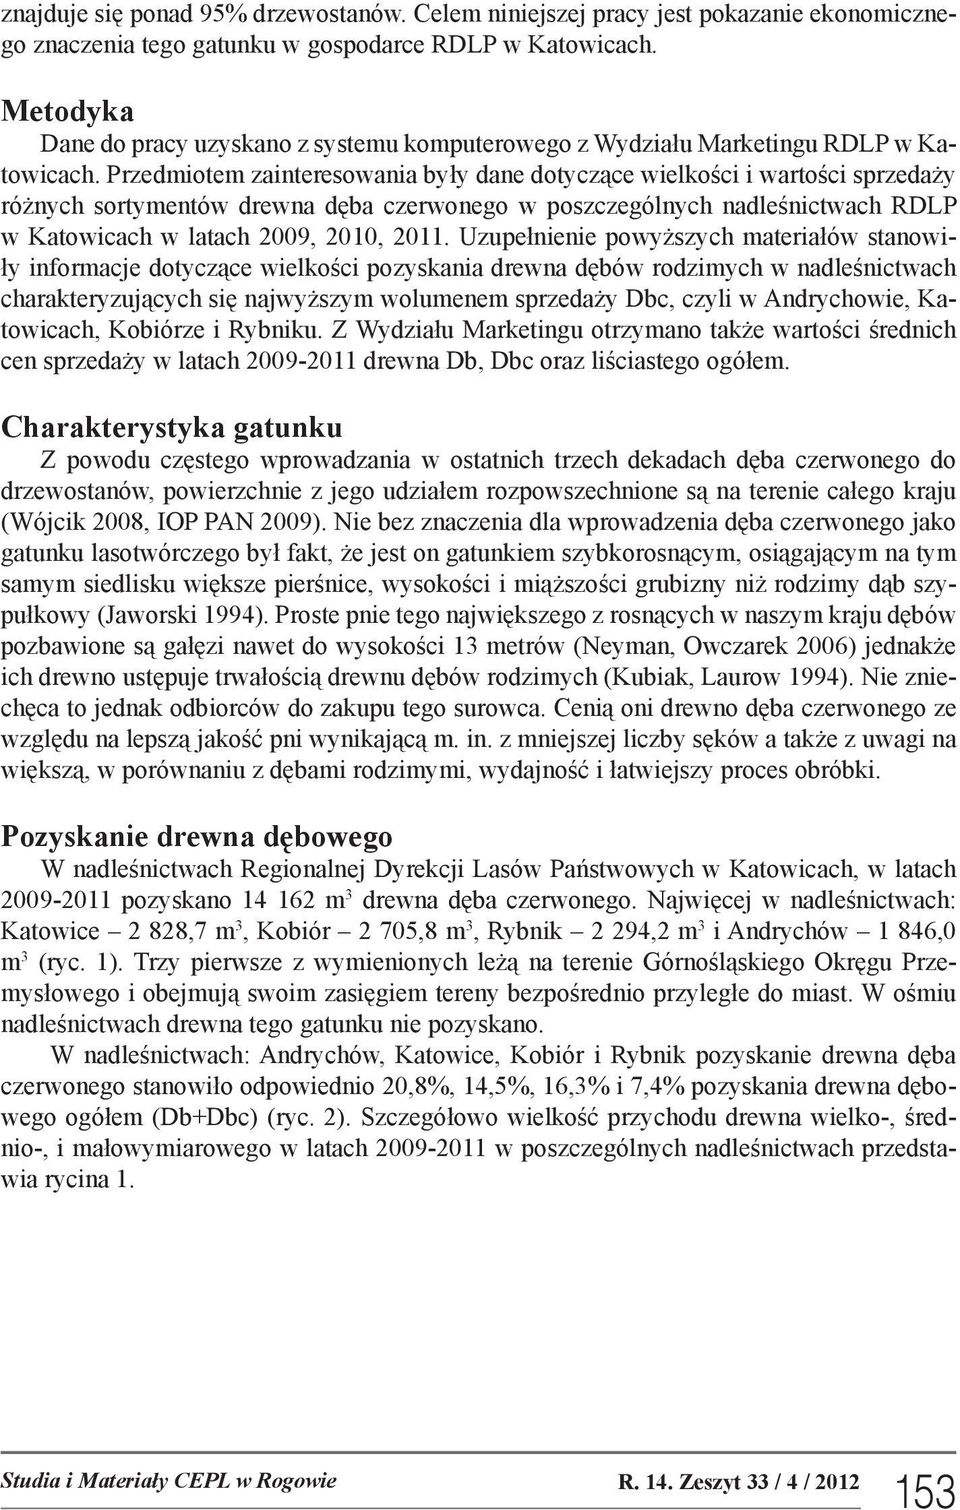 Przedmiotem zainteresowania były dane dotyczące wielkości i wartości sprzedaży różnych sortymentów drewna dęba czerwonego w poszczególnych nadleśnictwach RDLP w Katowicach w latach 29, 21, 211.